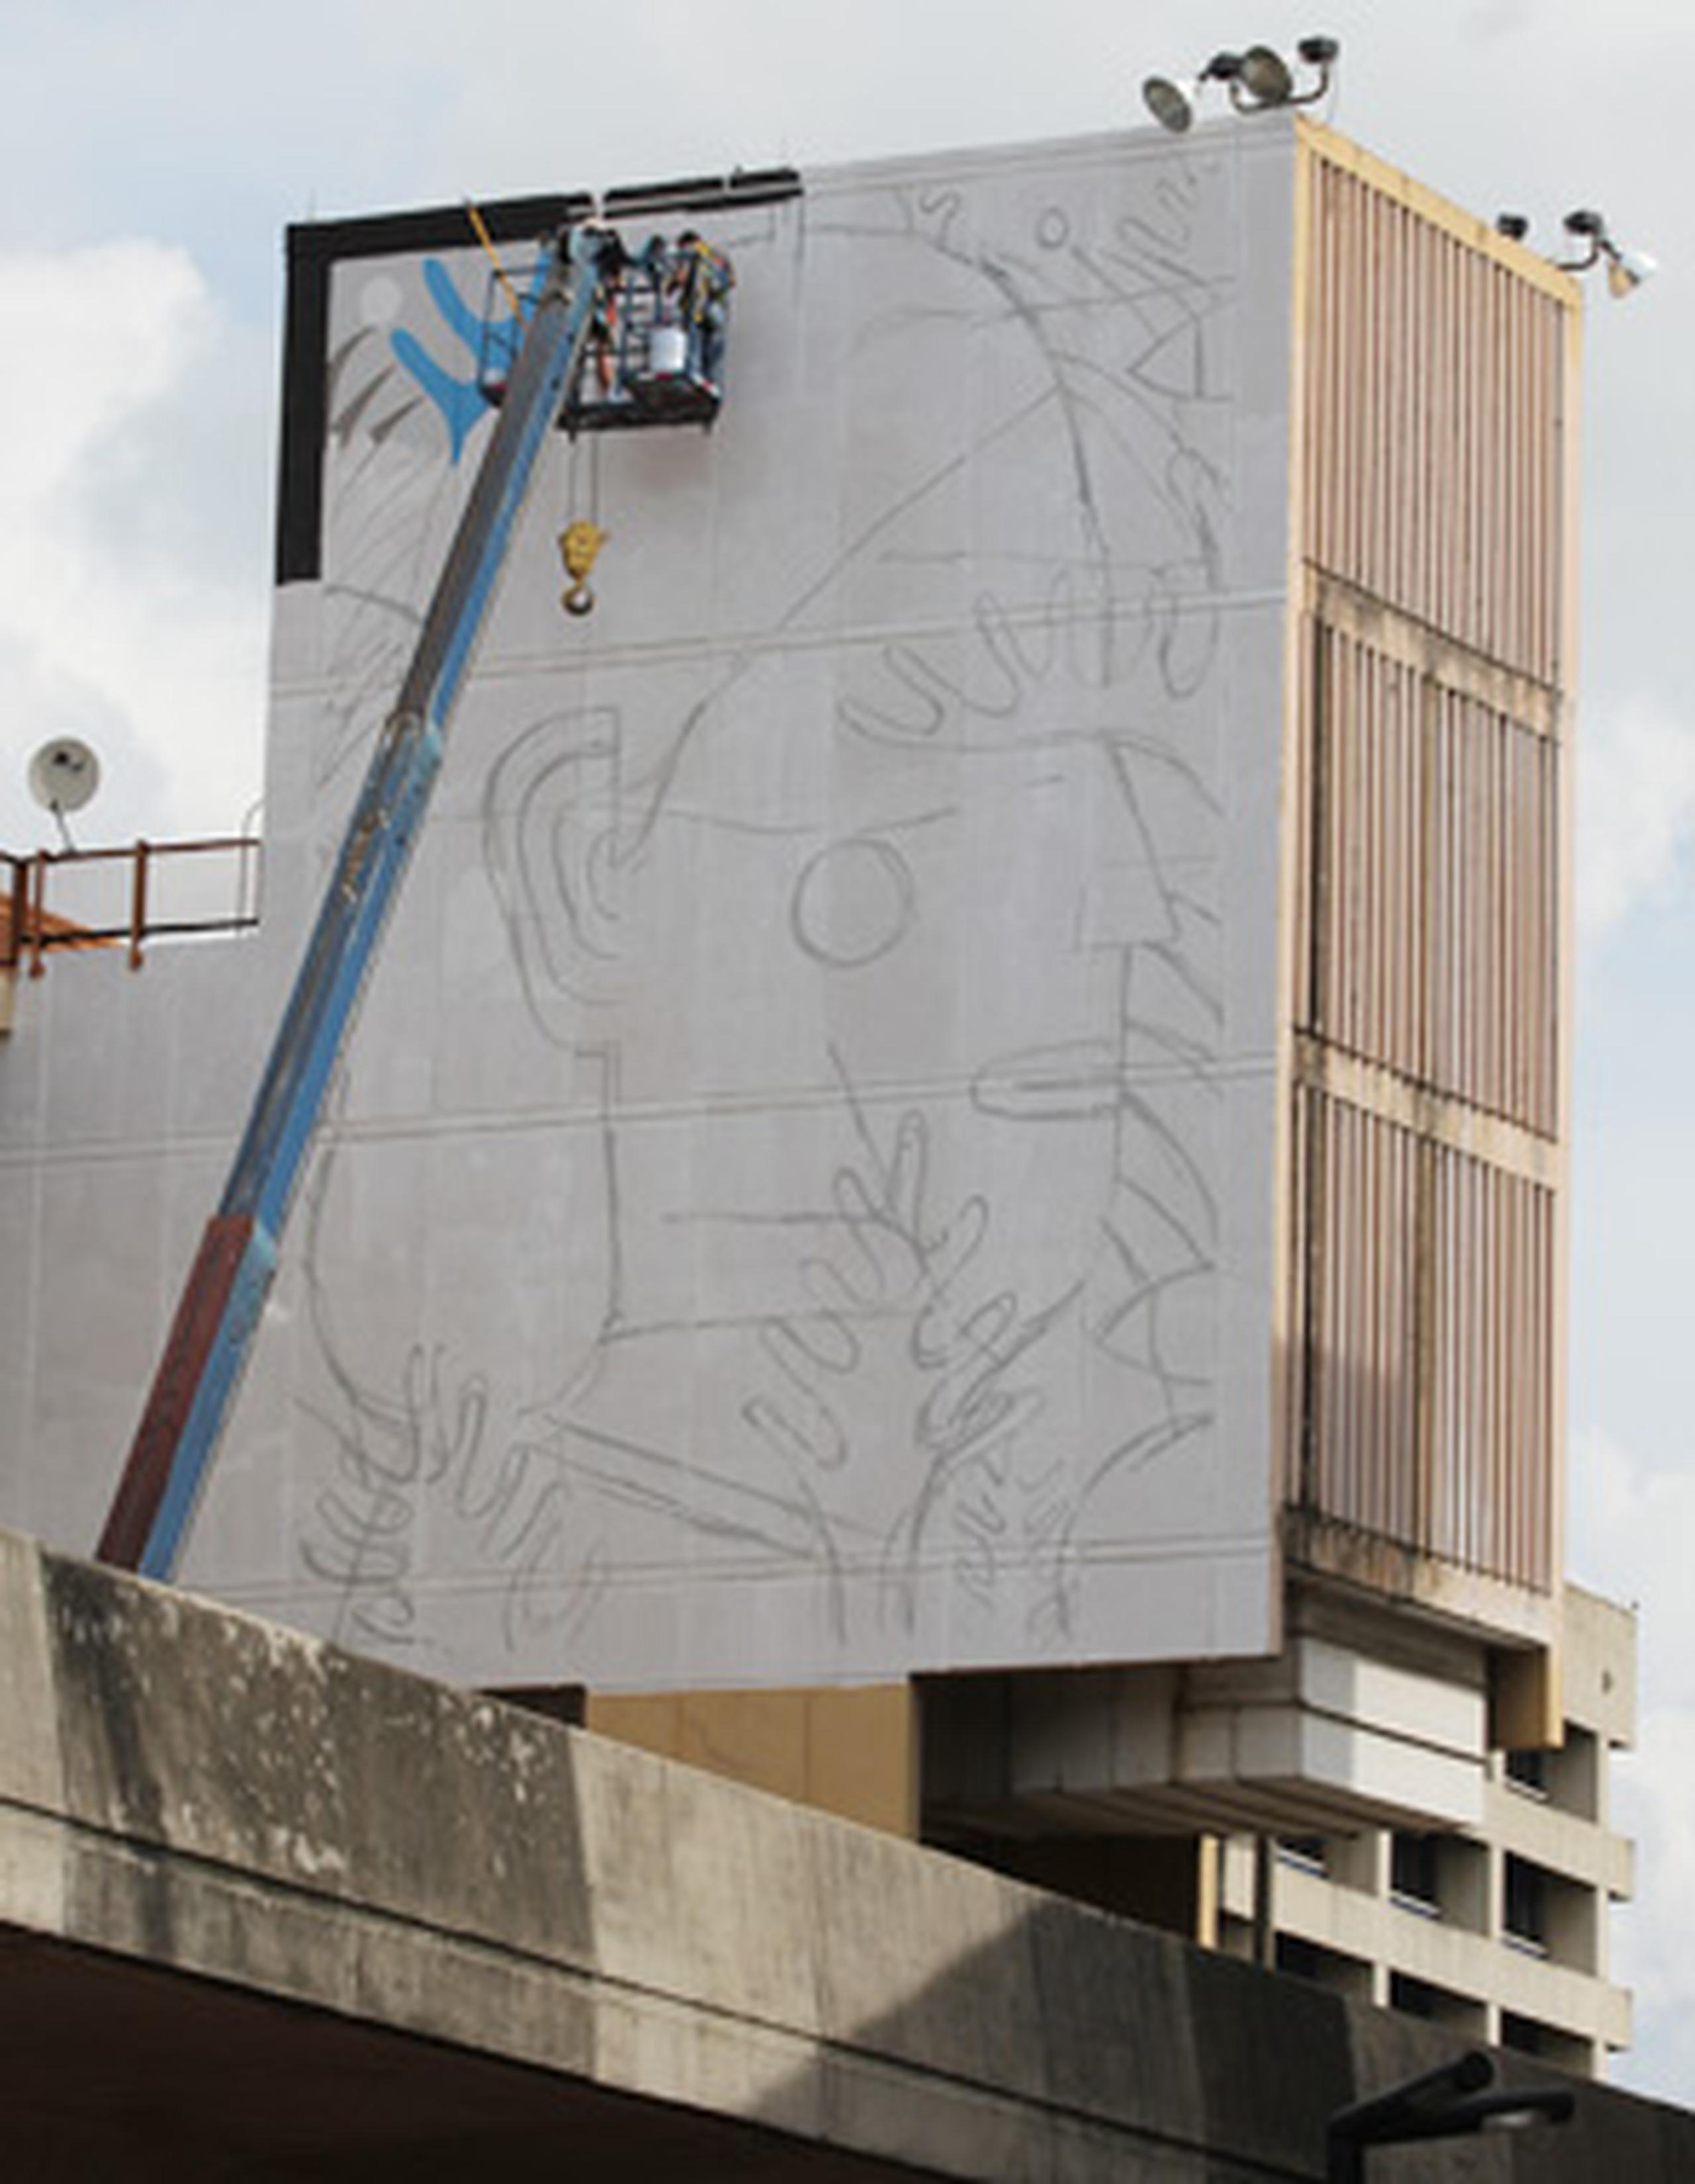 El artista Agostino Iacurci trabajará en la torre sur del coliseo Rubén Rodríguez. (alex.figueroa@gfrmedia.com)